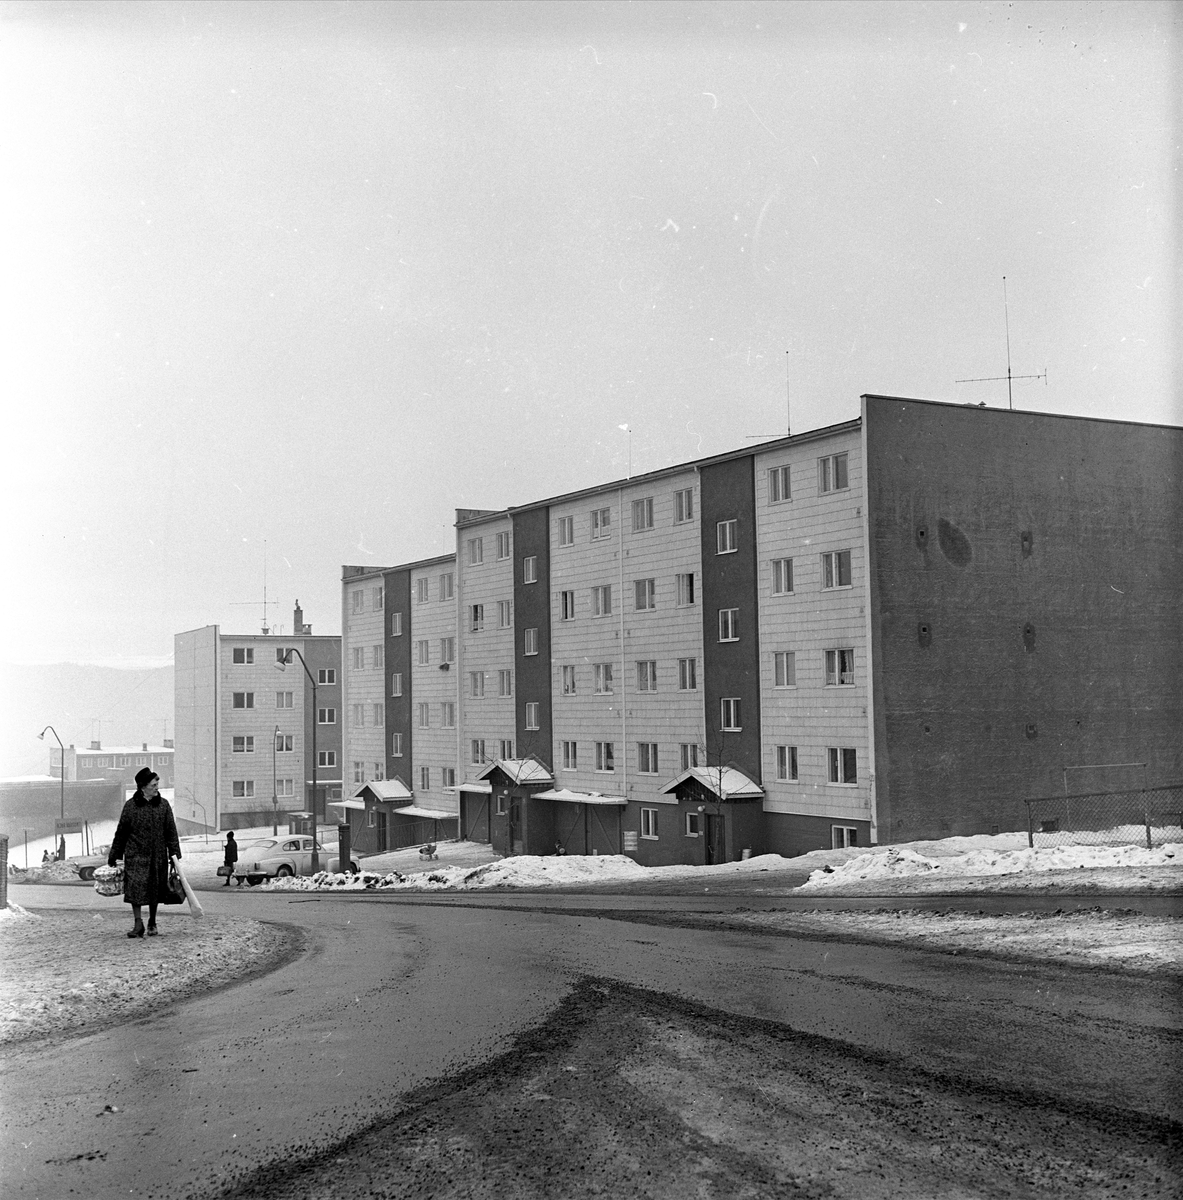 Oslo, 01.03.1965. Vei med fotgjenger og boligblokker.